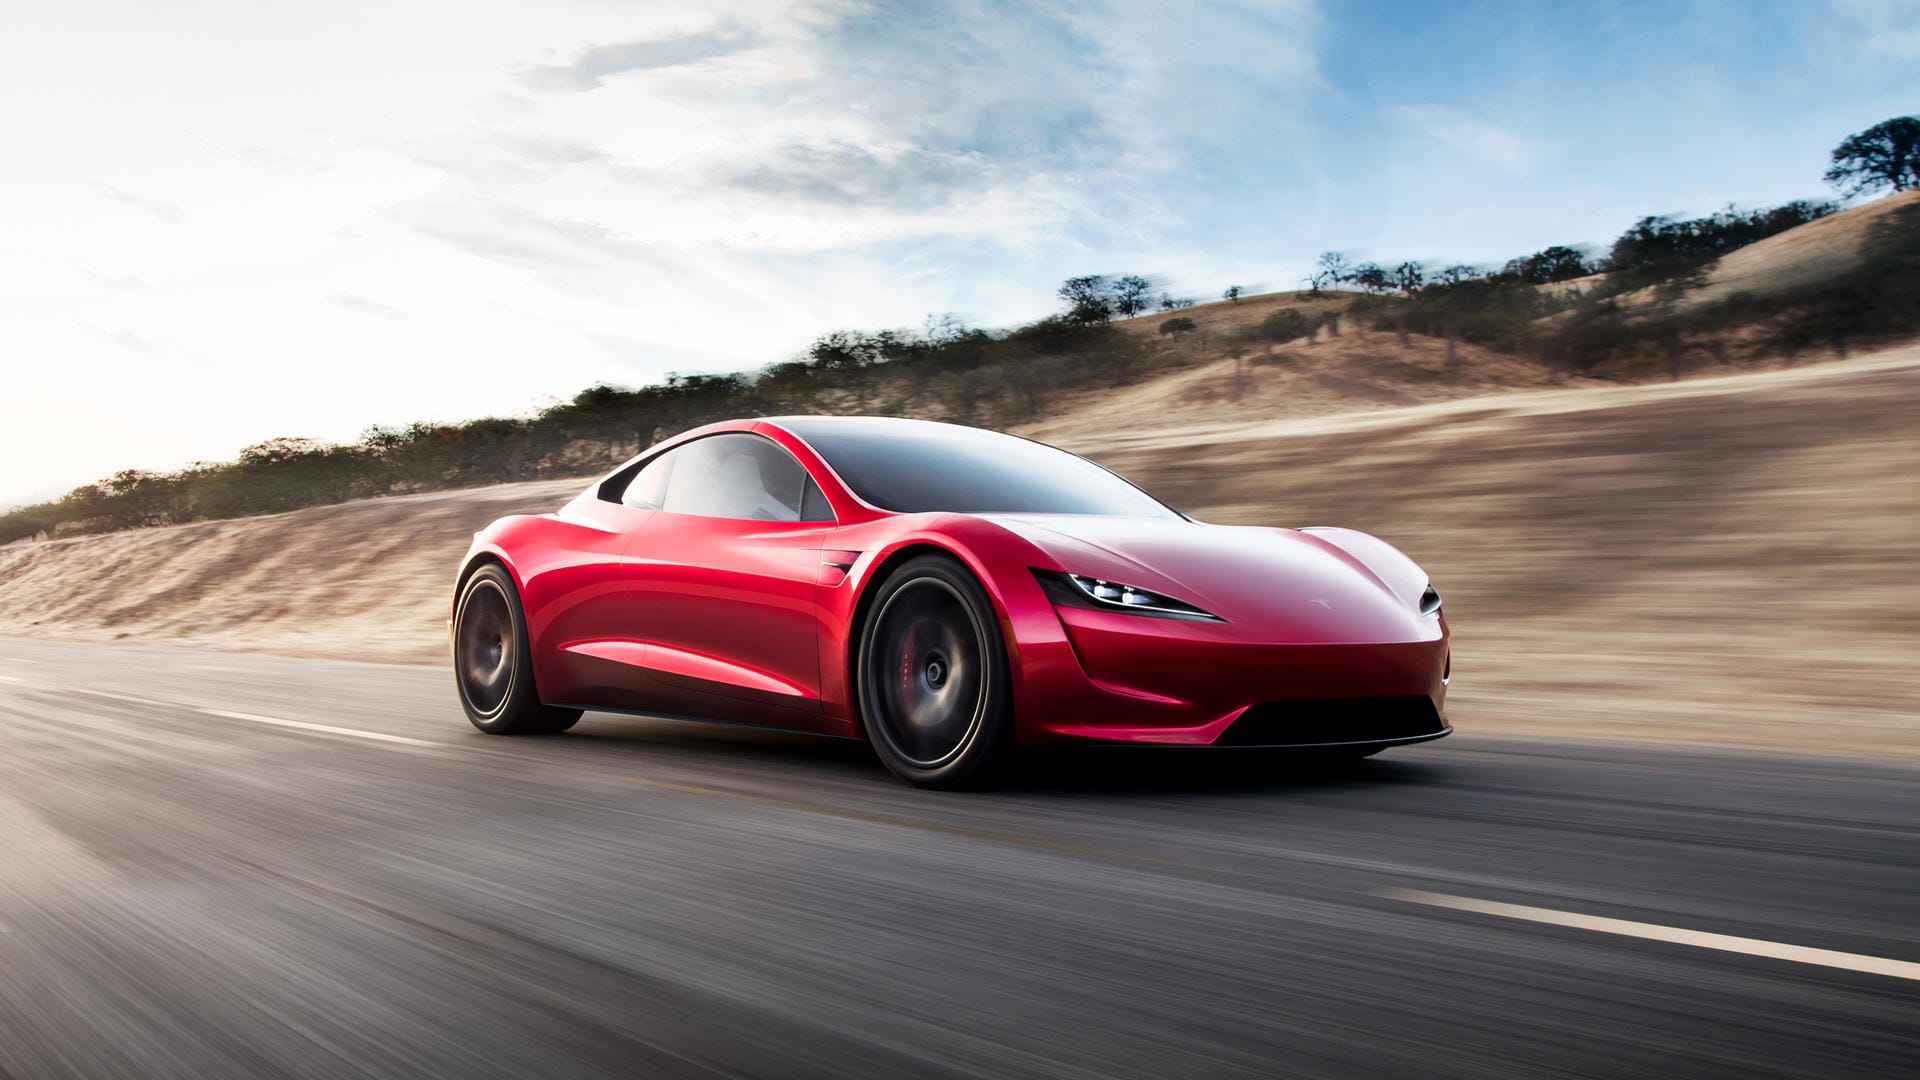 Neu in der Tesla-Flotte ist auch dieser Sportwagen mit Targa-Dach. Er soll 400 Stundenkilometer schnell sein, 1000 Kilometer Reichweite haben und vom Jahr 2020 an verfügbar sein.